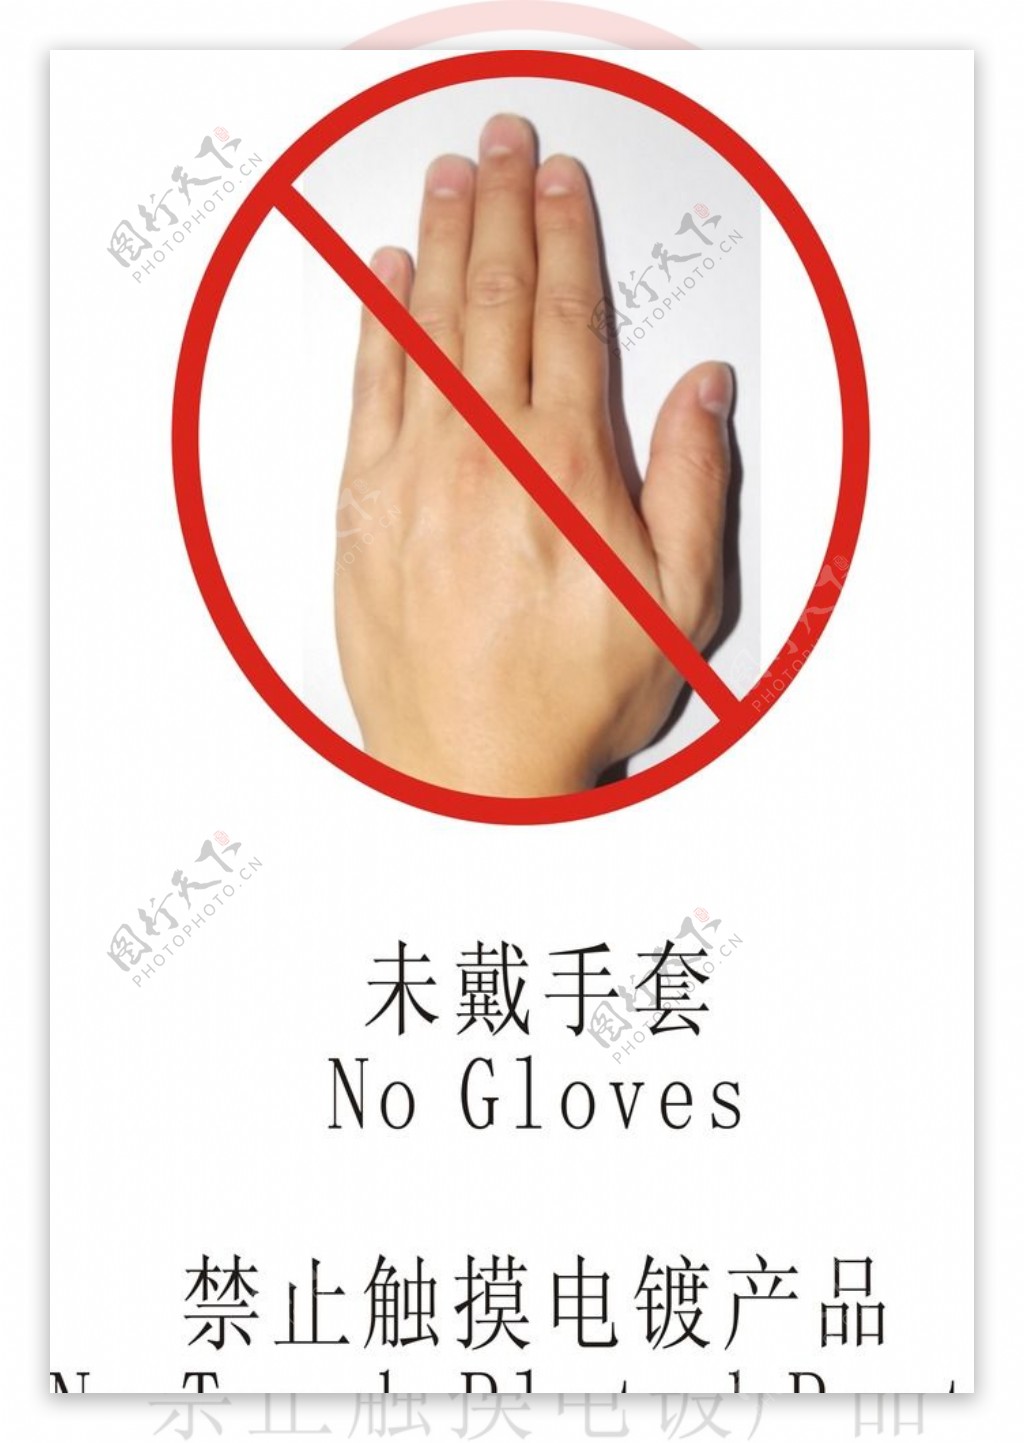 未戴手套禁止触摸标图片